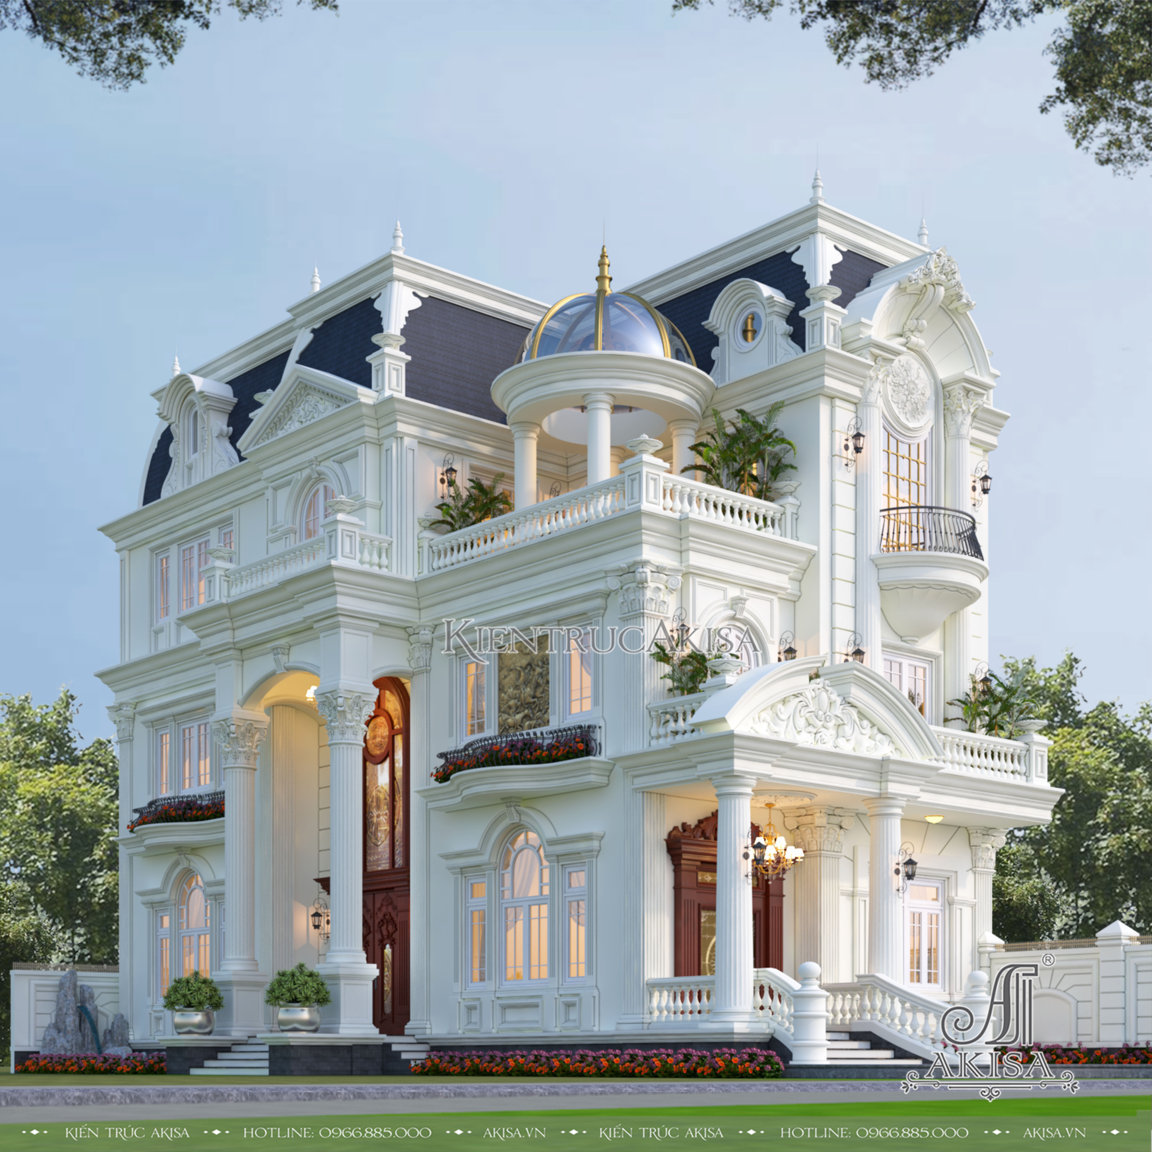 10 mẫu villa cổ điển 3 tầng đẹp và sang trọng nhất Việt Nam